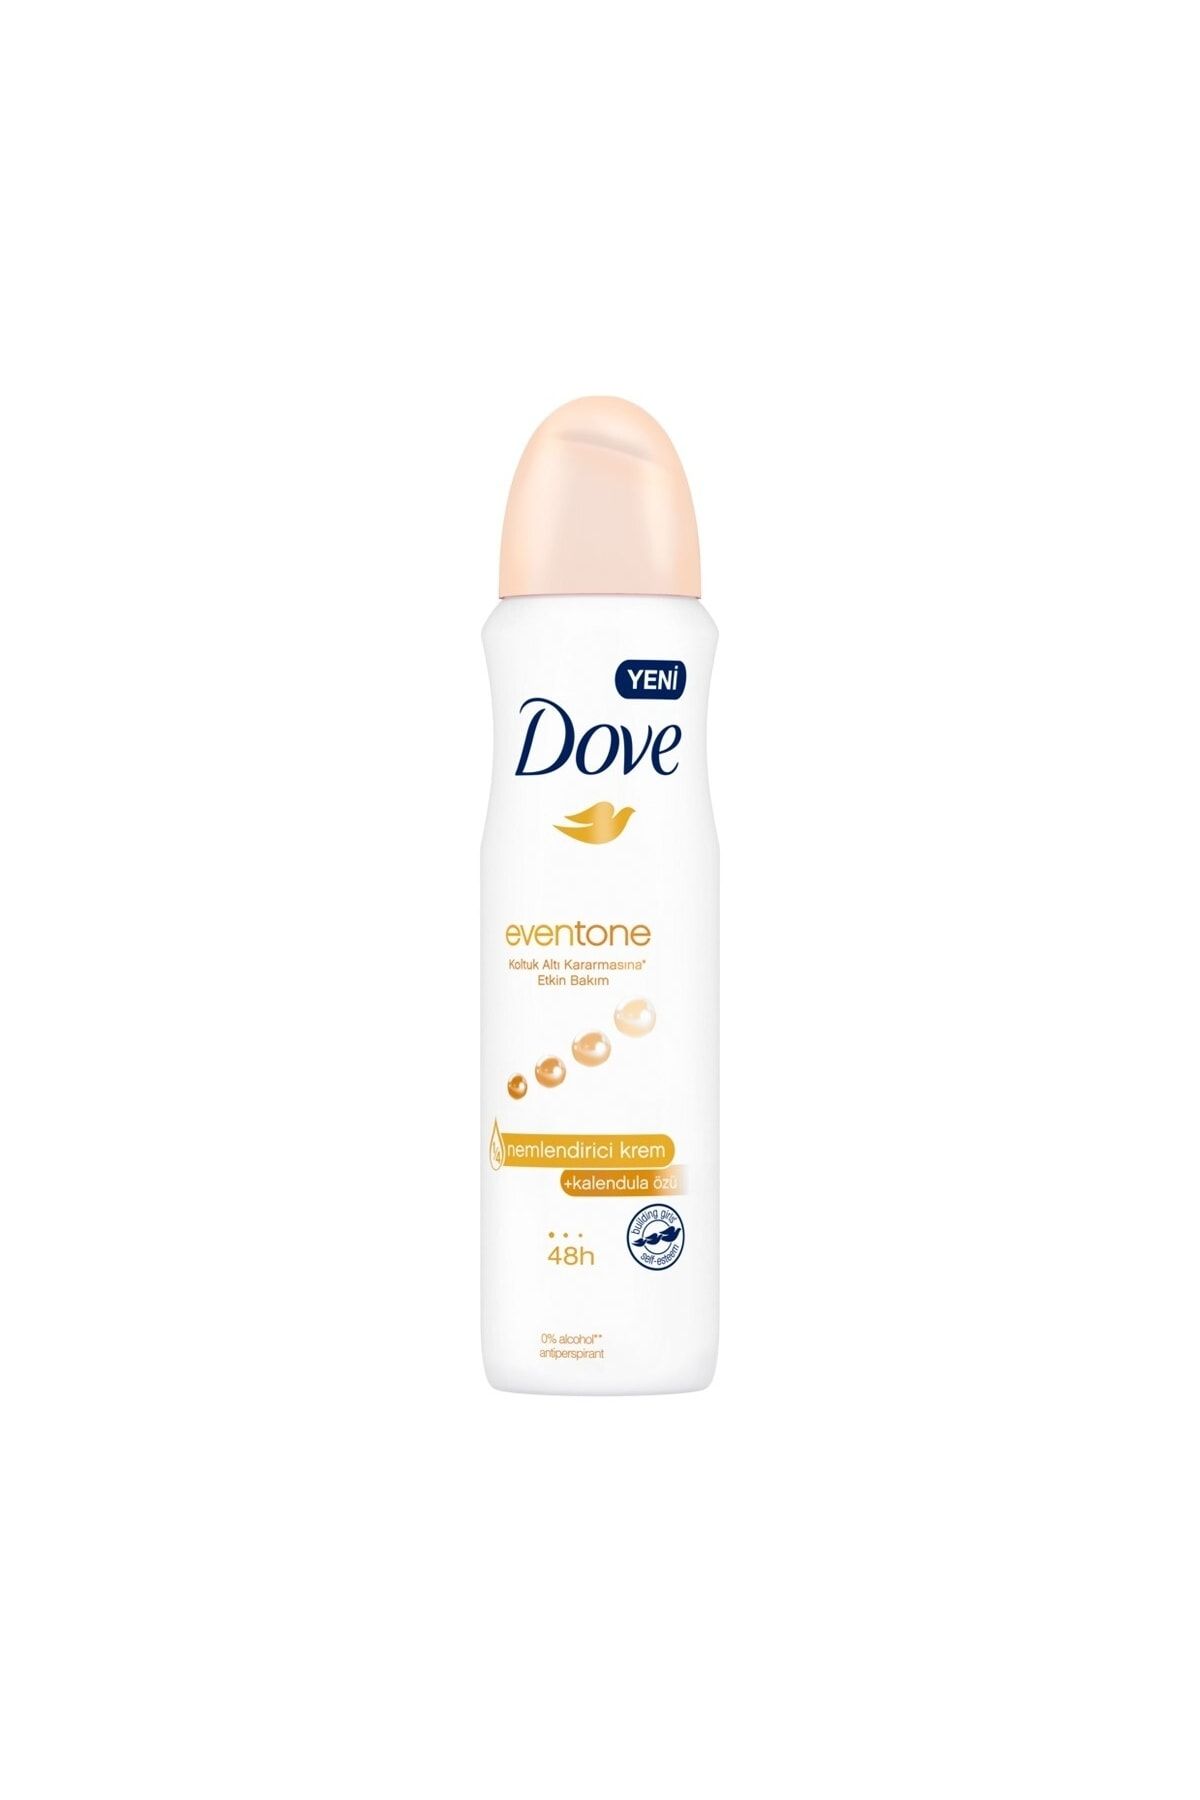 Dove Eventone Kadın Deodorant Sprey 150 Ml